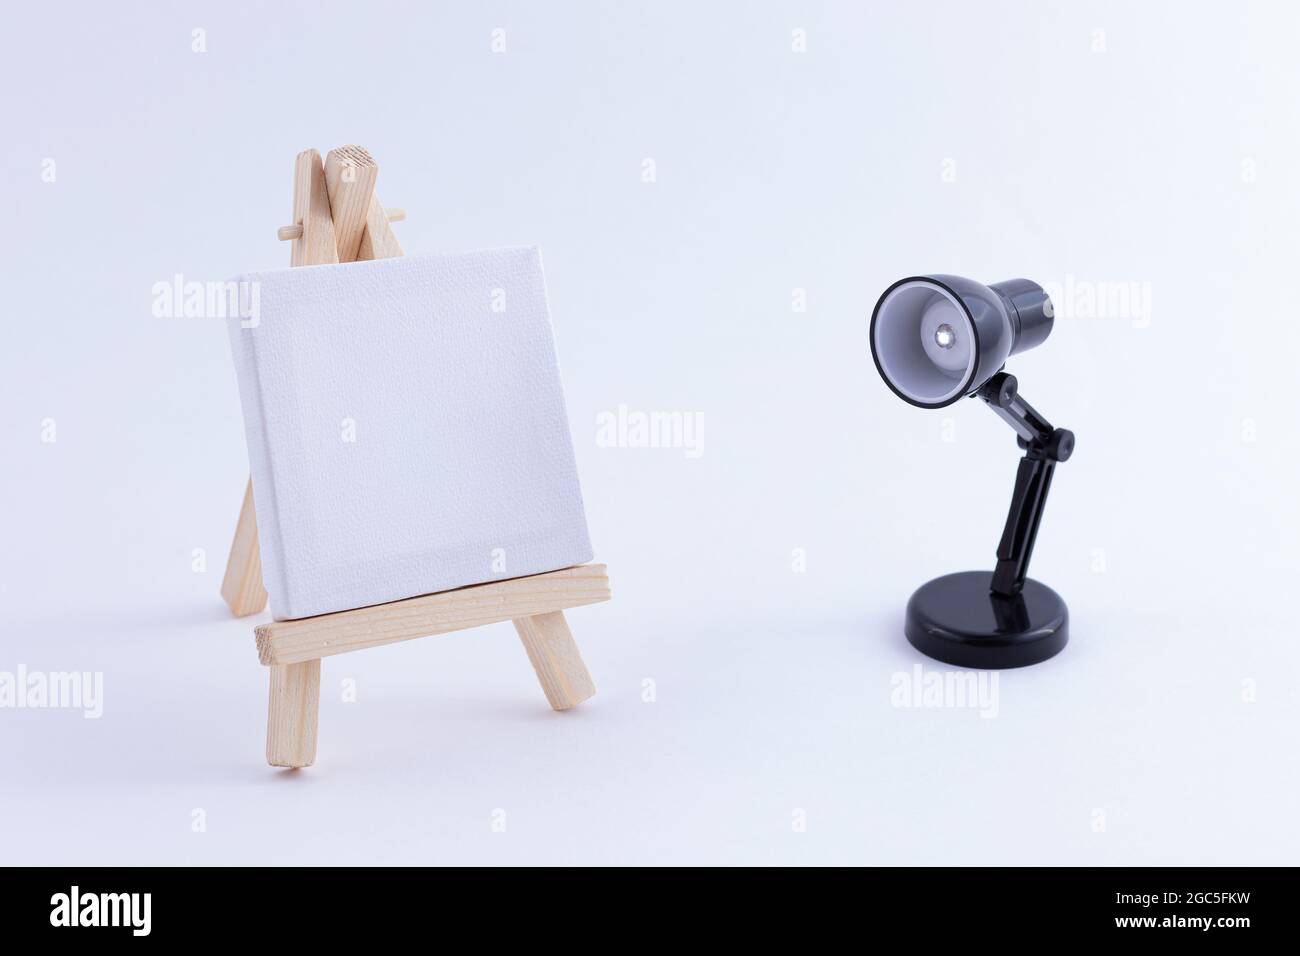 Easel in legno in miniatura con tela bianca quadrata vuota per artisti e  pittori - Mockup. Mini supporto in legno con tavola da disegno pulita e  piccola lampada da tavolo nera su